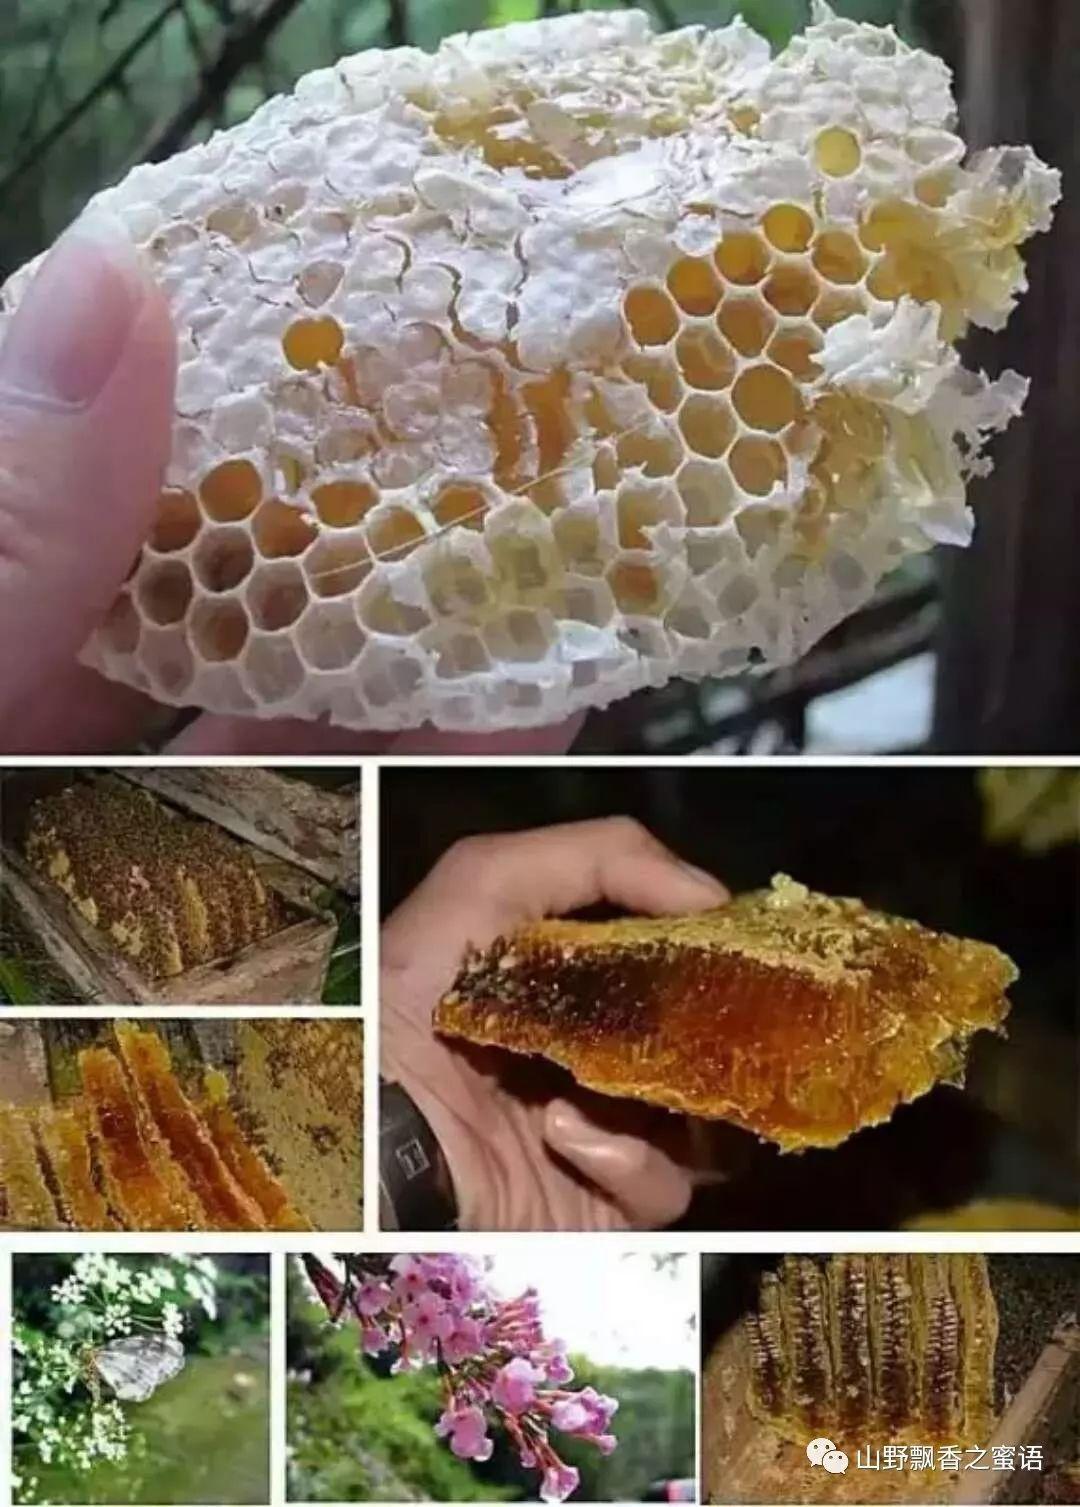 怎么辨别蜂蜜的真假? - 知乎